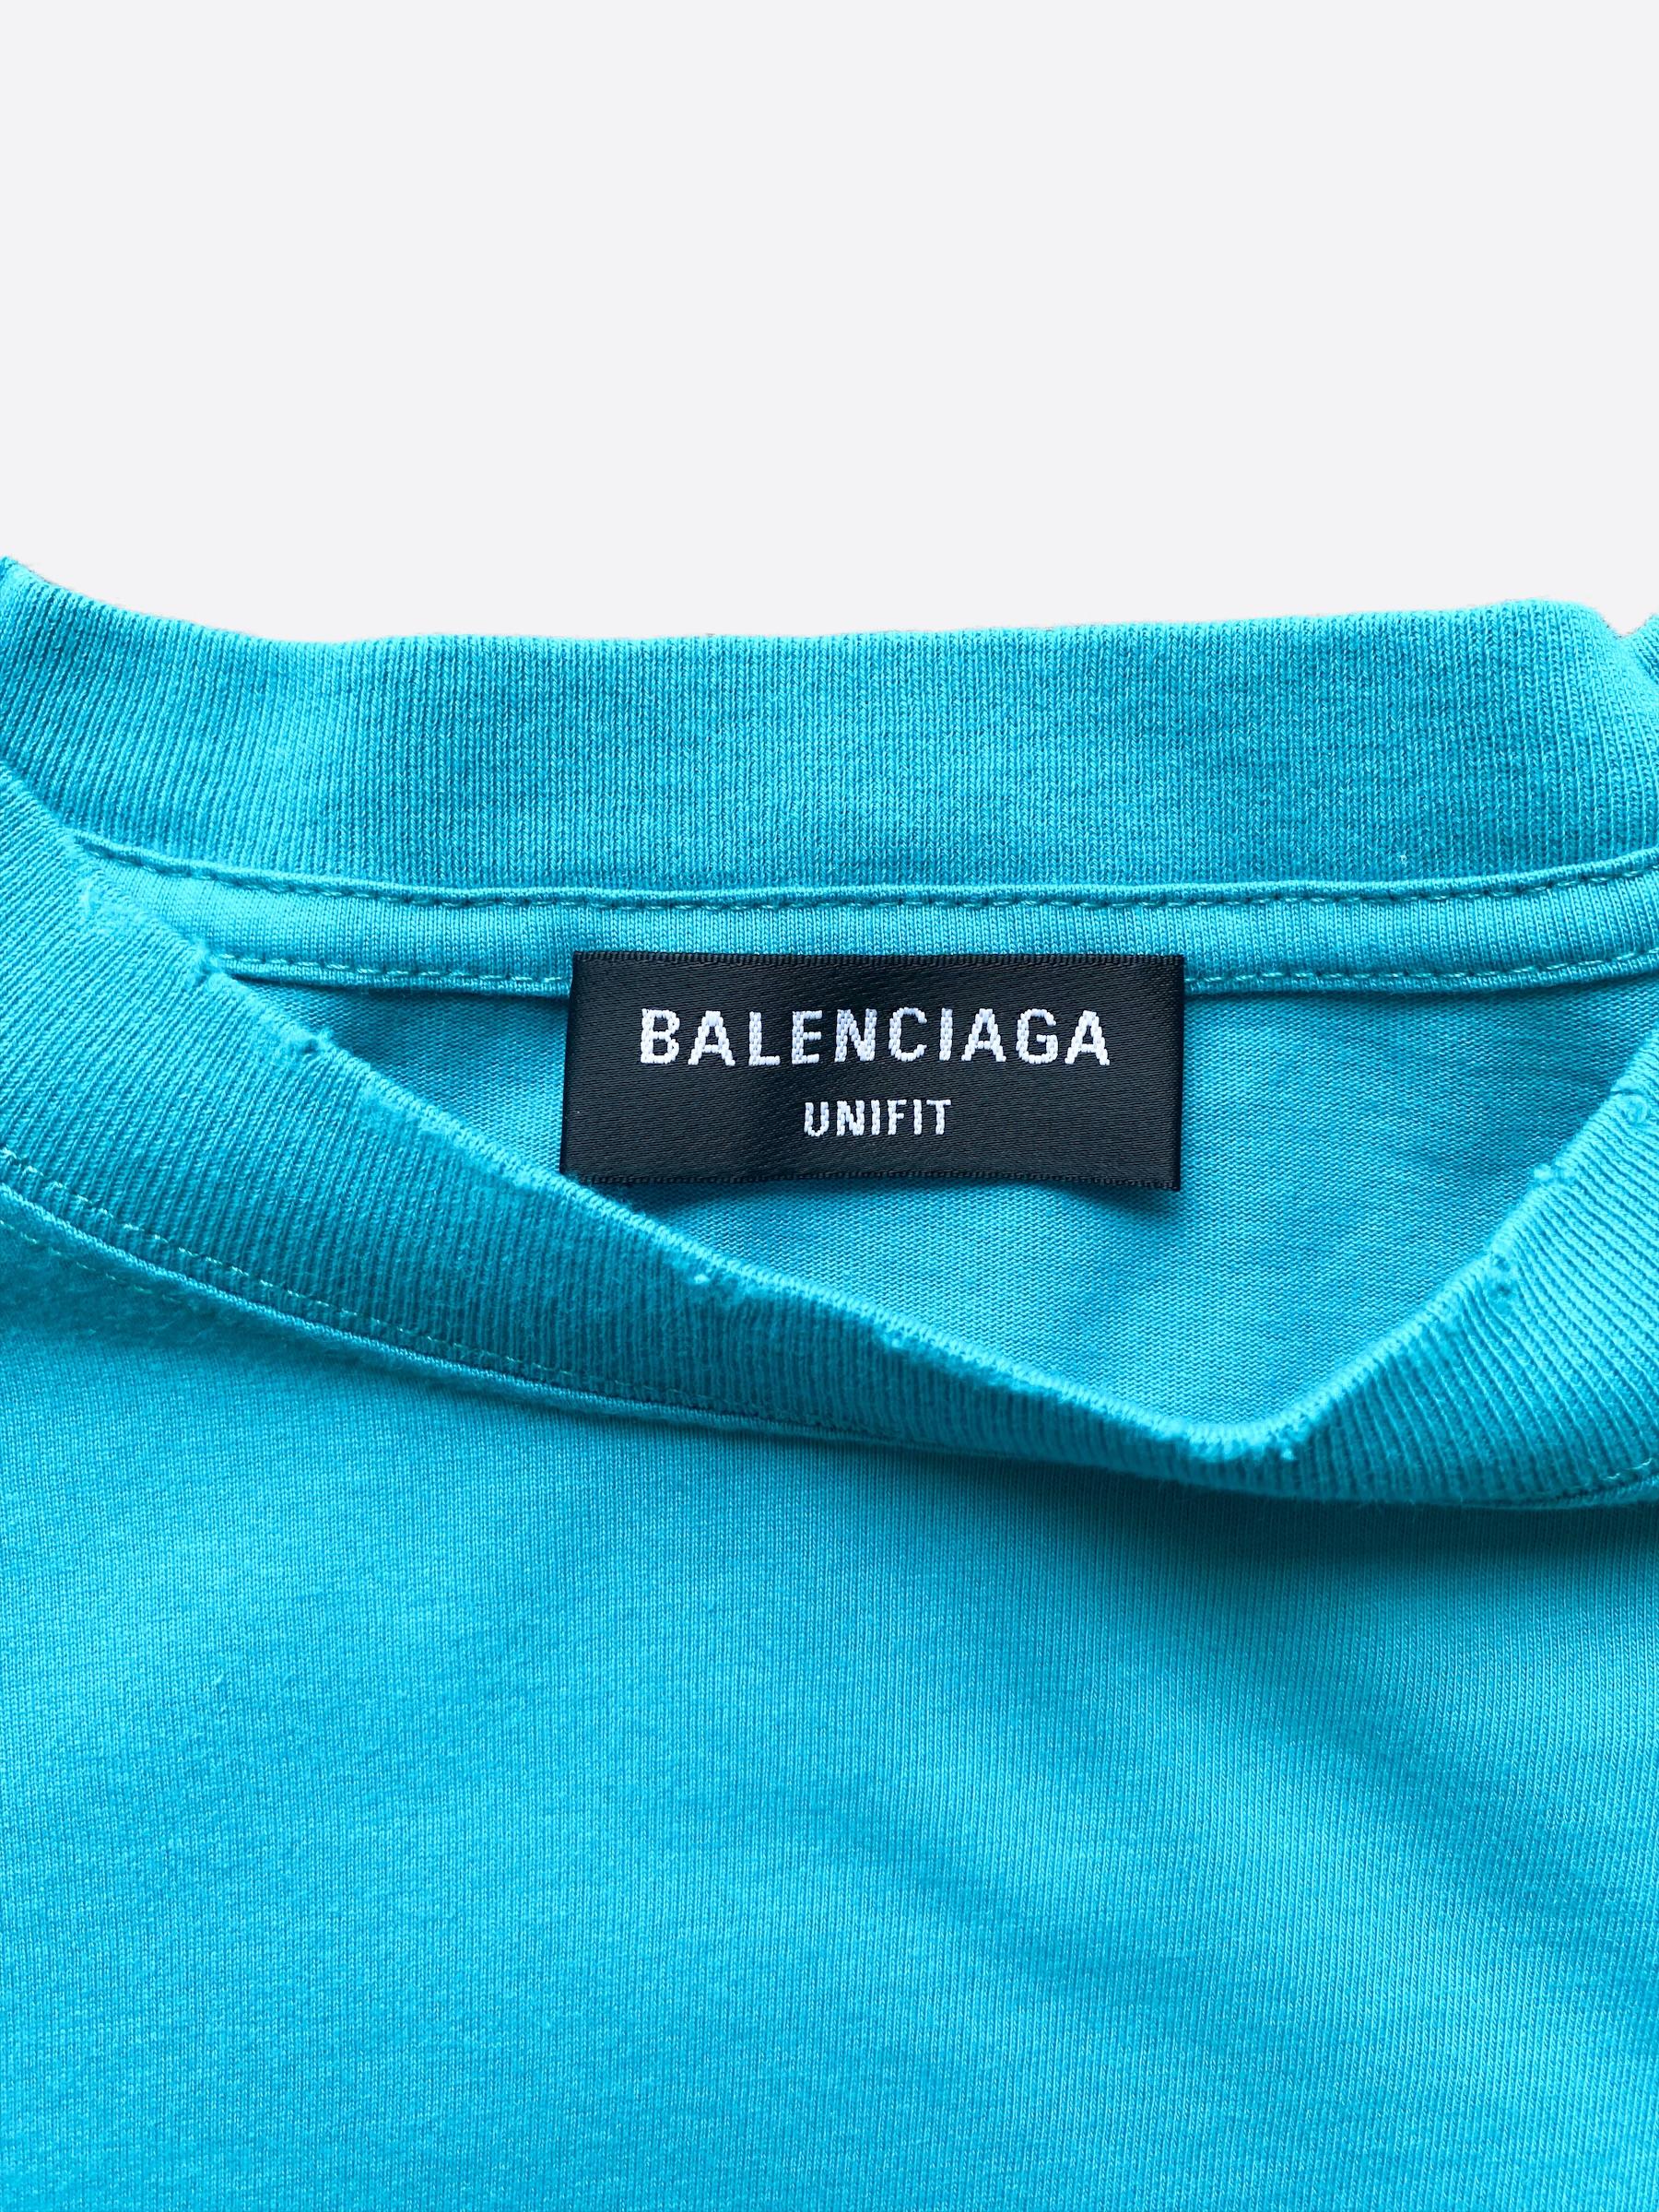 Balenciaga Distressed T-shirt In Blue